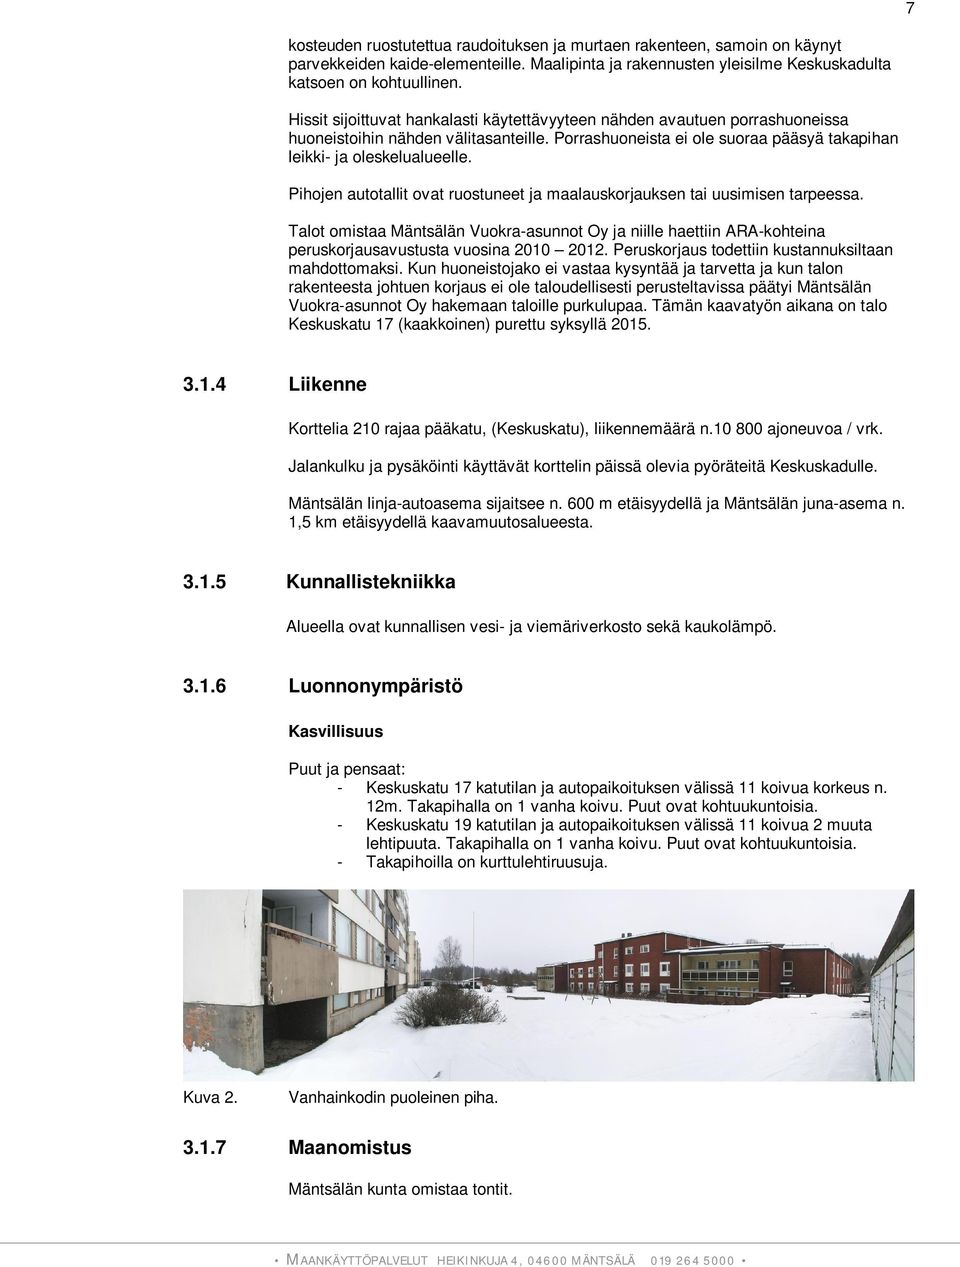 Pihojen autotallit ovat ruostuneet ja maalauskorjauksen tai uusimisen tarpeessa. Talot omistaa Mäntsälän Vuokra-asunnot Oy ja niille haettiin ARA-kohteina peruskorjausavustusta vuosina 2010 2012.